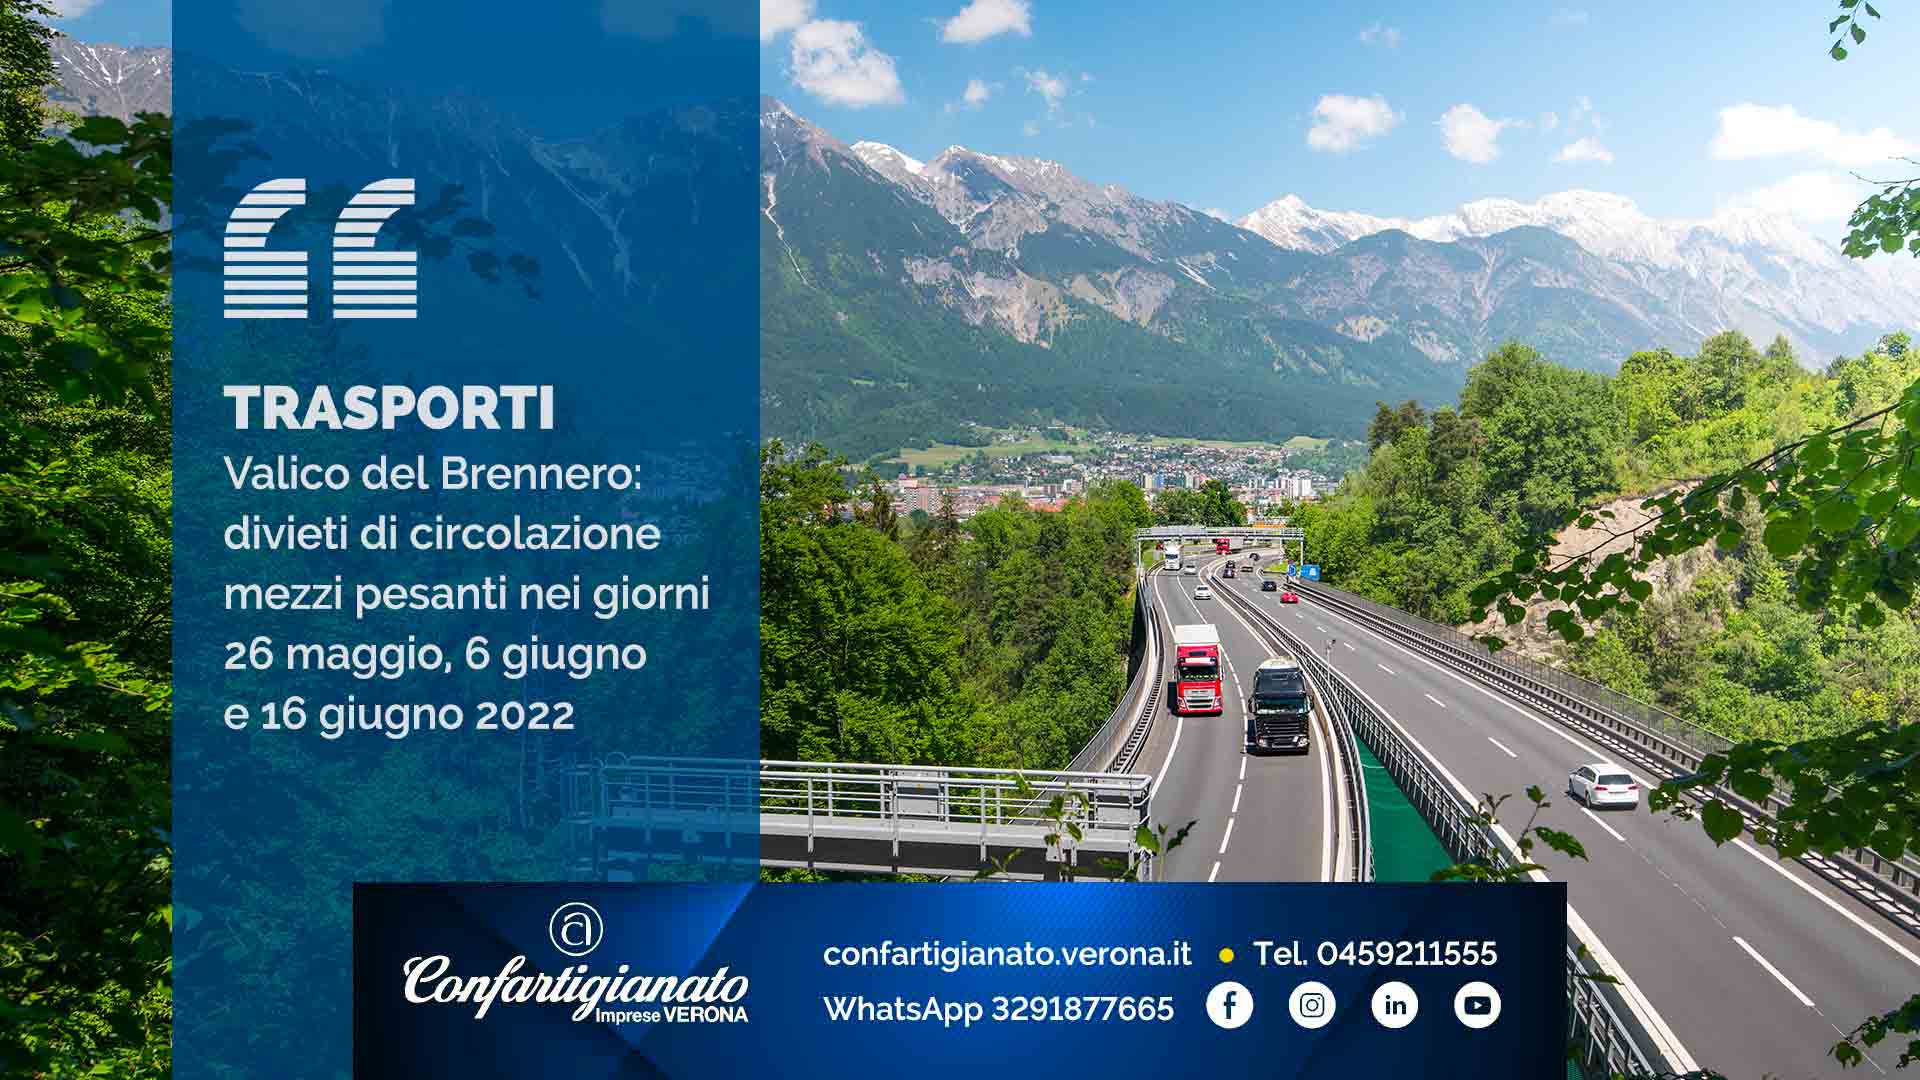 TRASPORTI – Valico del Brennero: divieti di circolazione mezzi pesanti nei giorni 26 maggio, 6 giugno e 16 giugno 2022